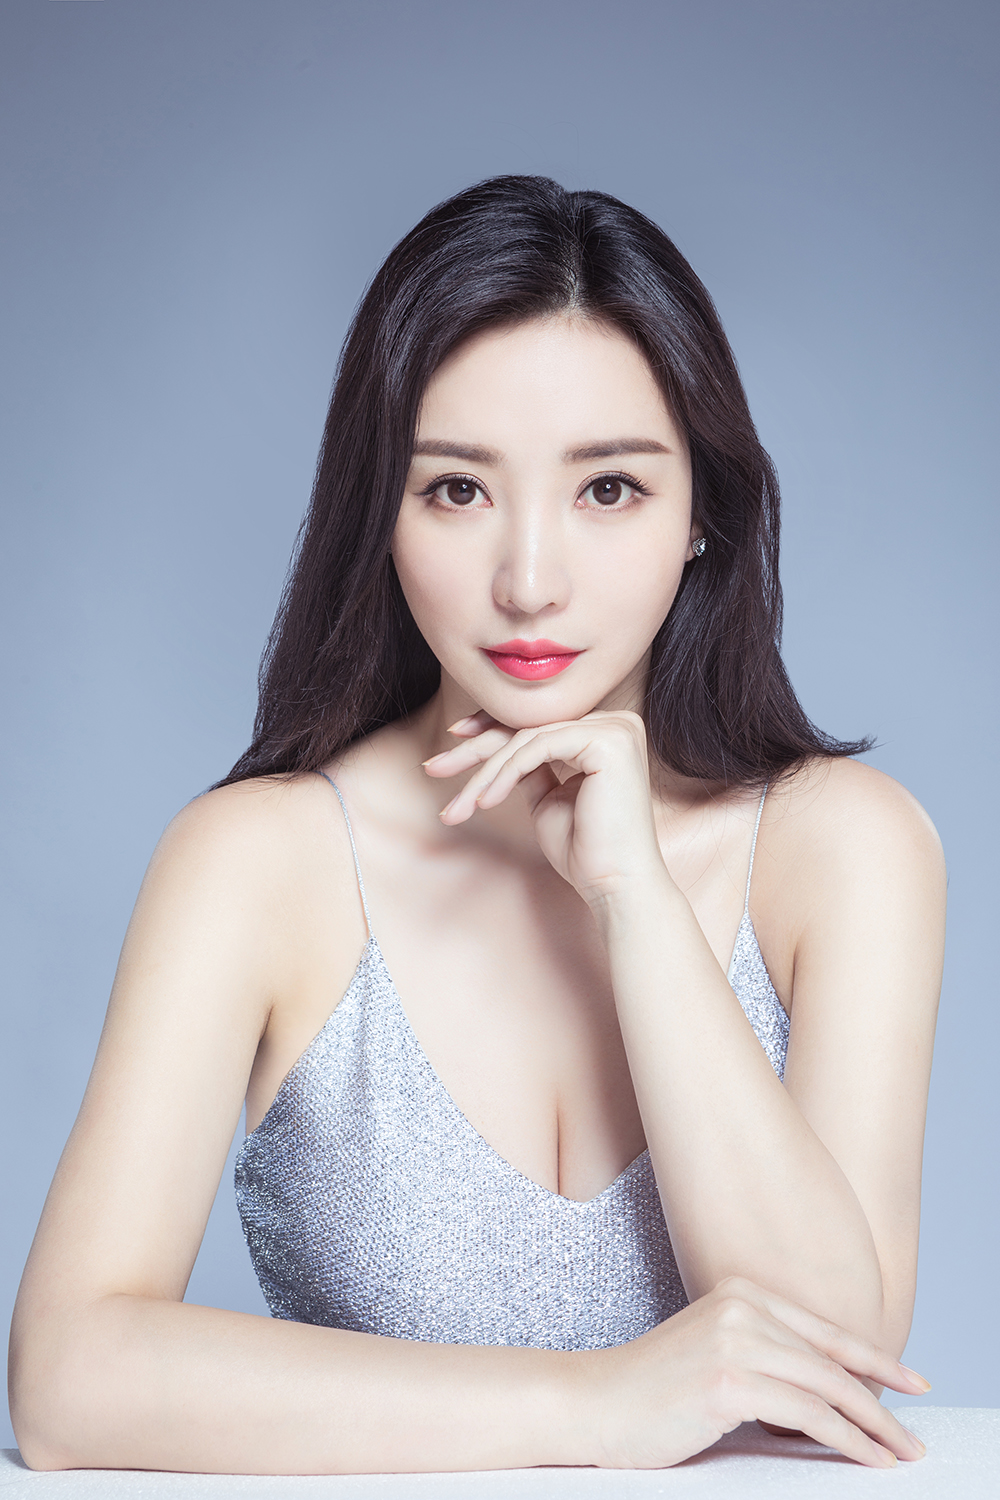 July 18, 2018, Beijing, Liu Yan (actress) in silver shiny close-fitting con...